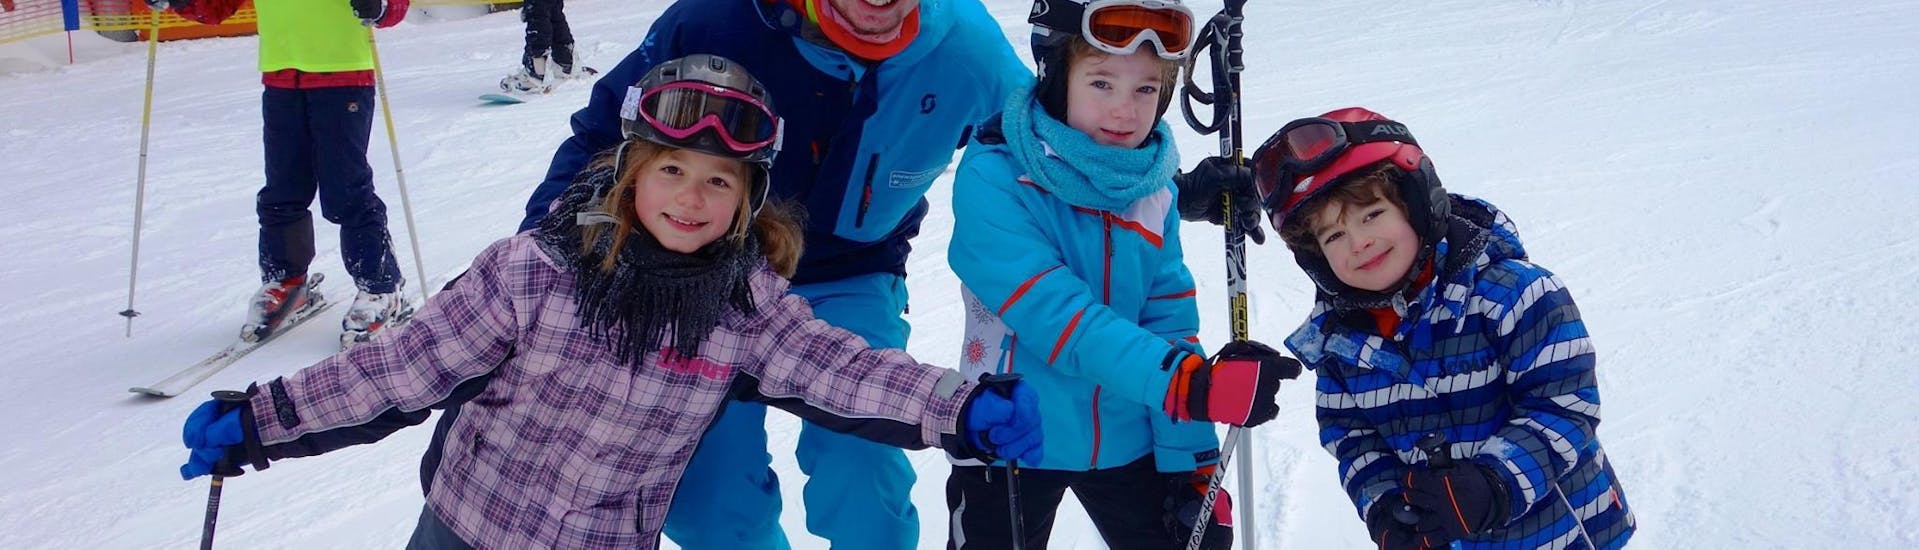 Privater Skikurs für Familien aller Levels.